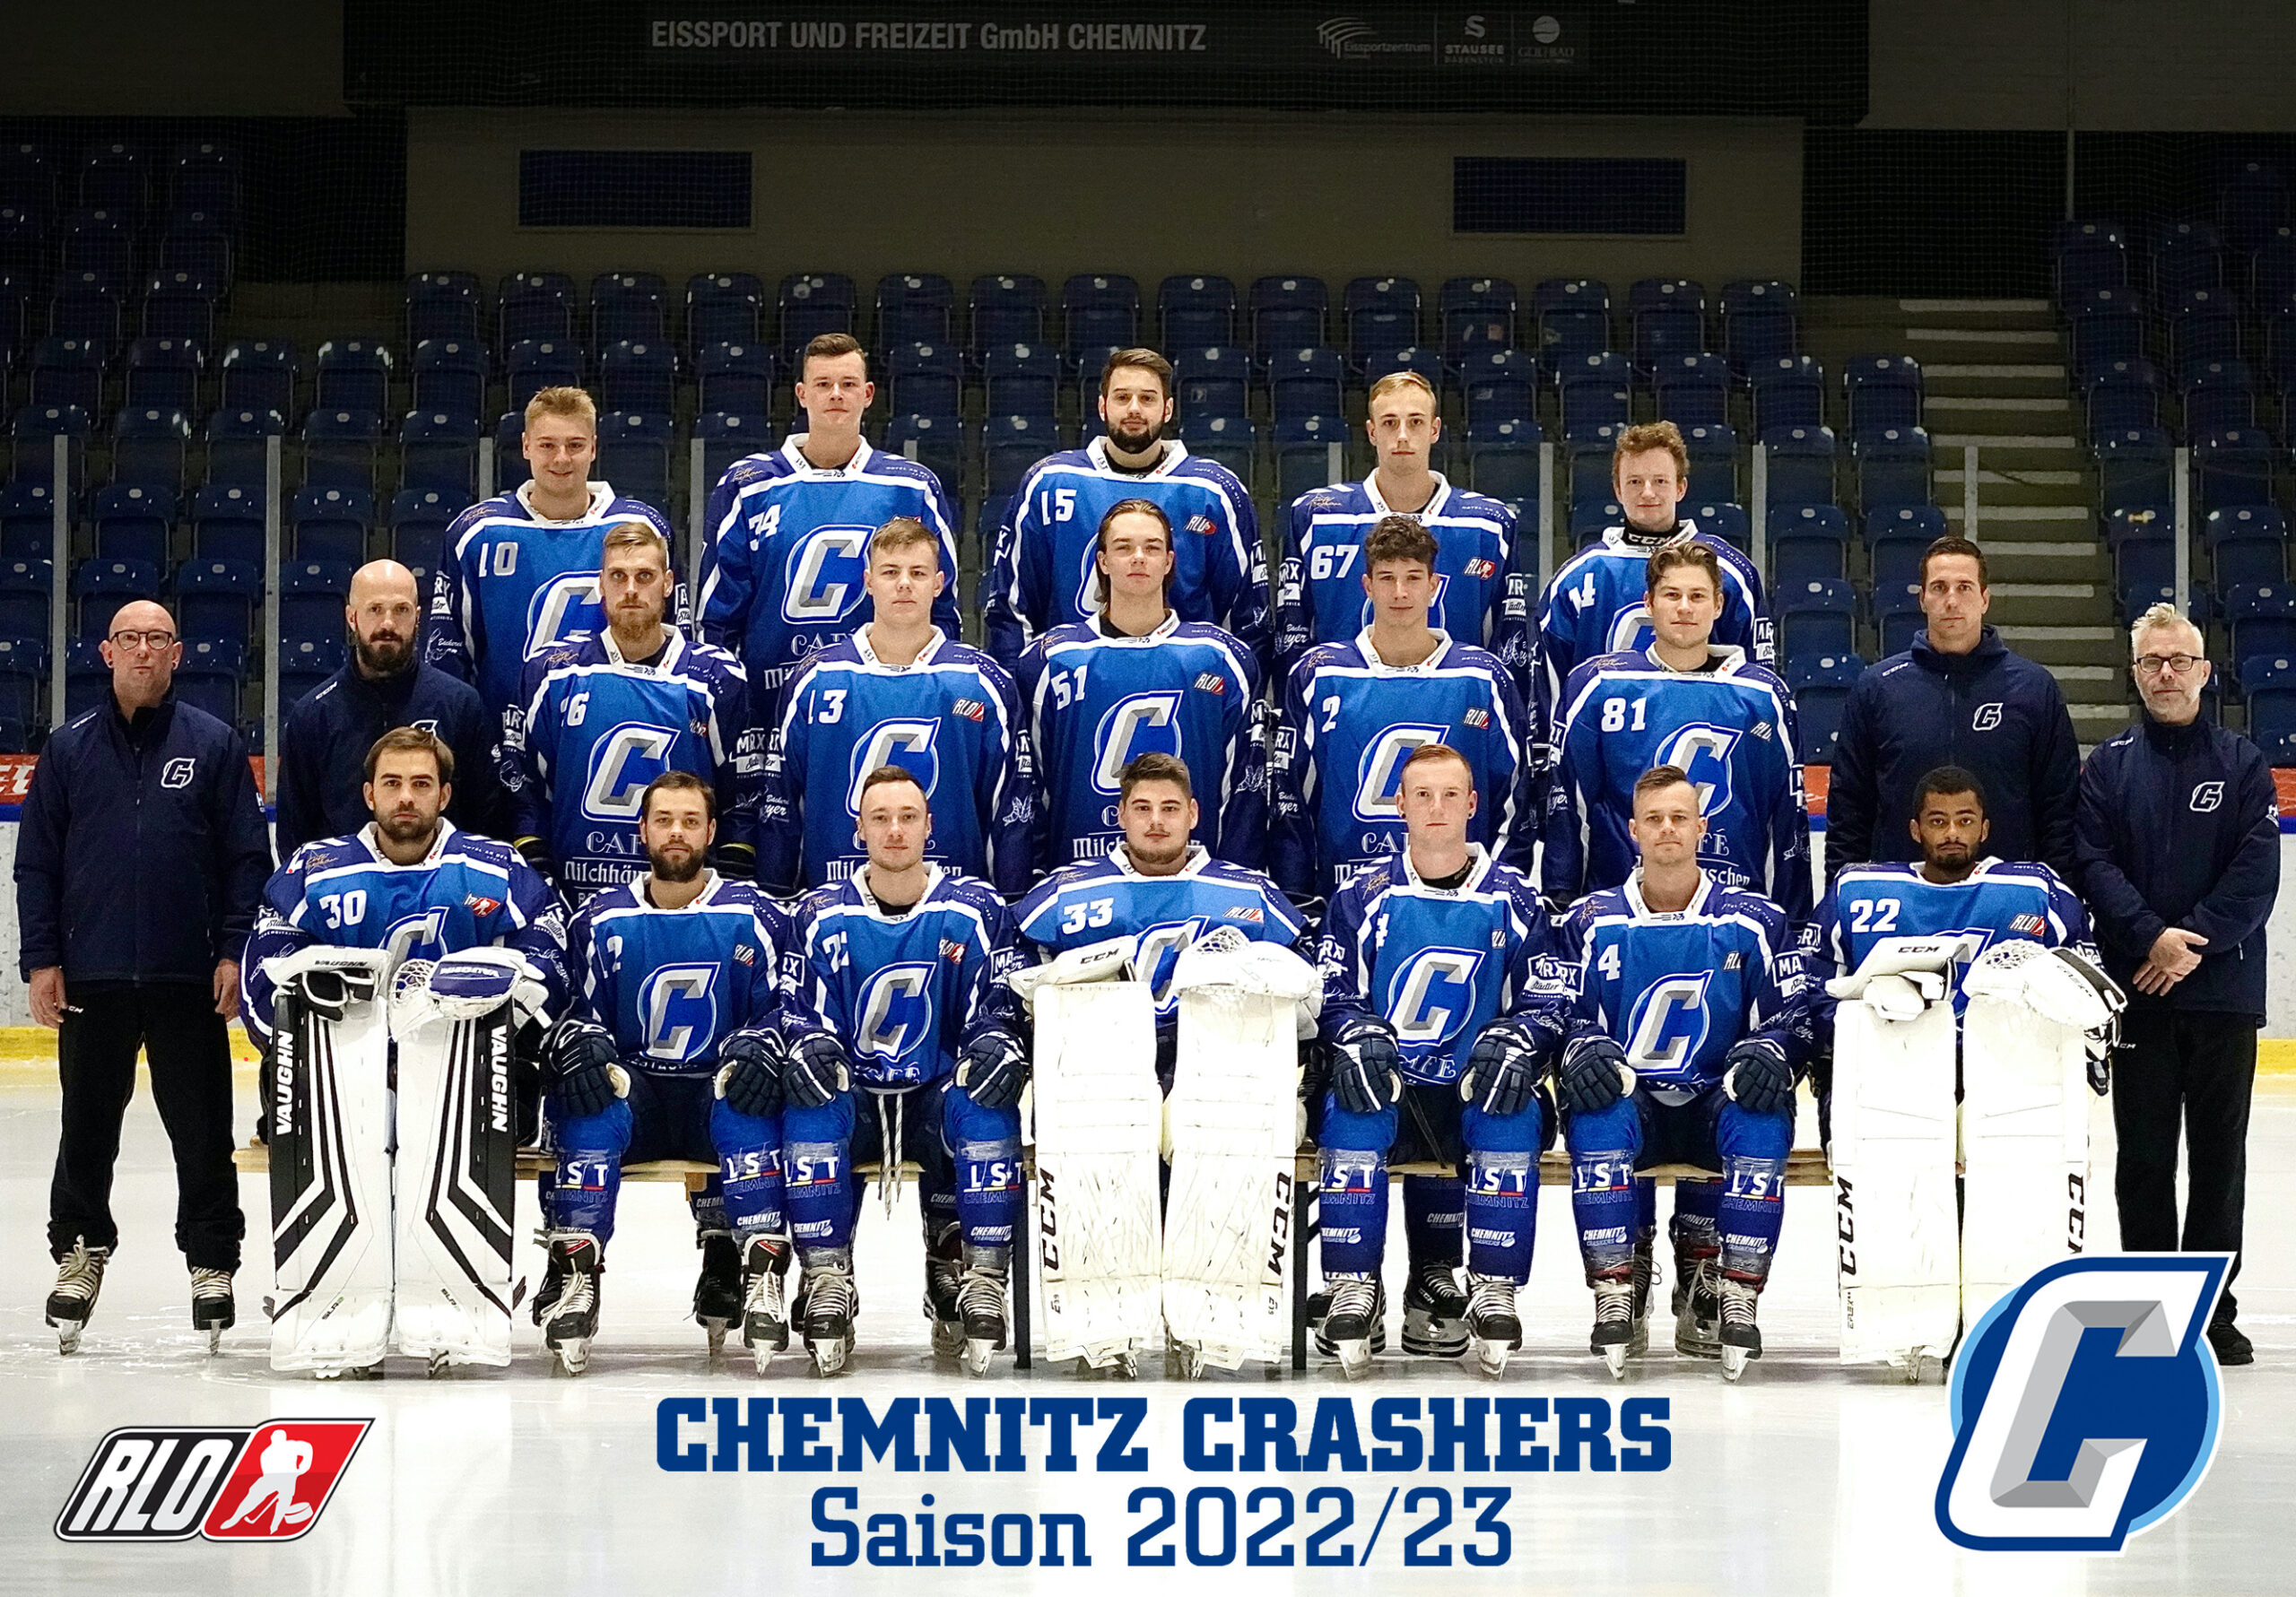 Mannschaft_Chemnitz_Crashers_Eishockey_Regionalliga_Ost_2021_2022